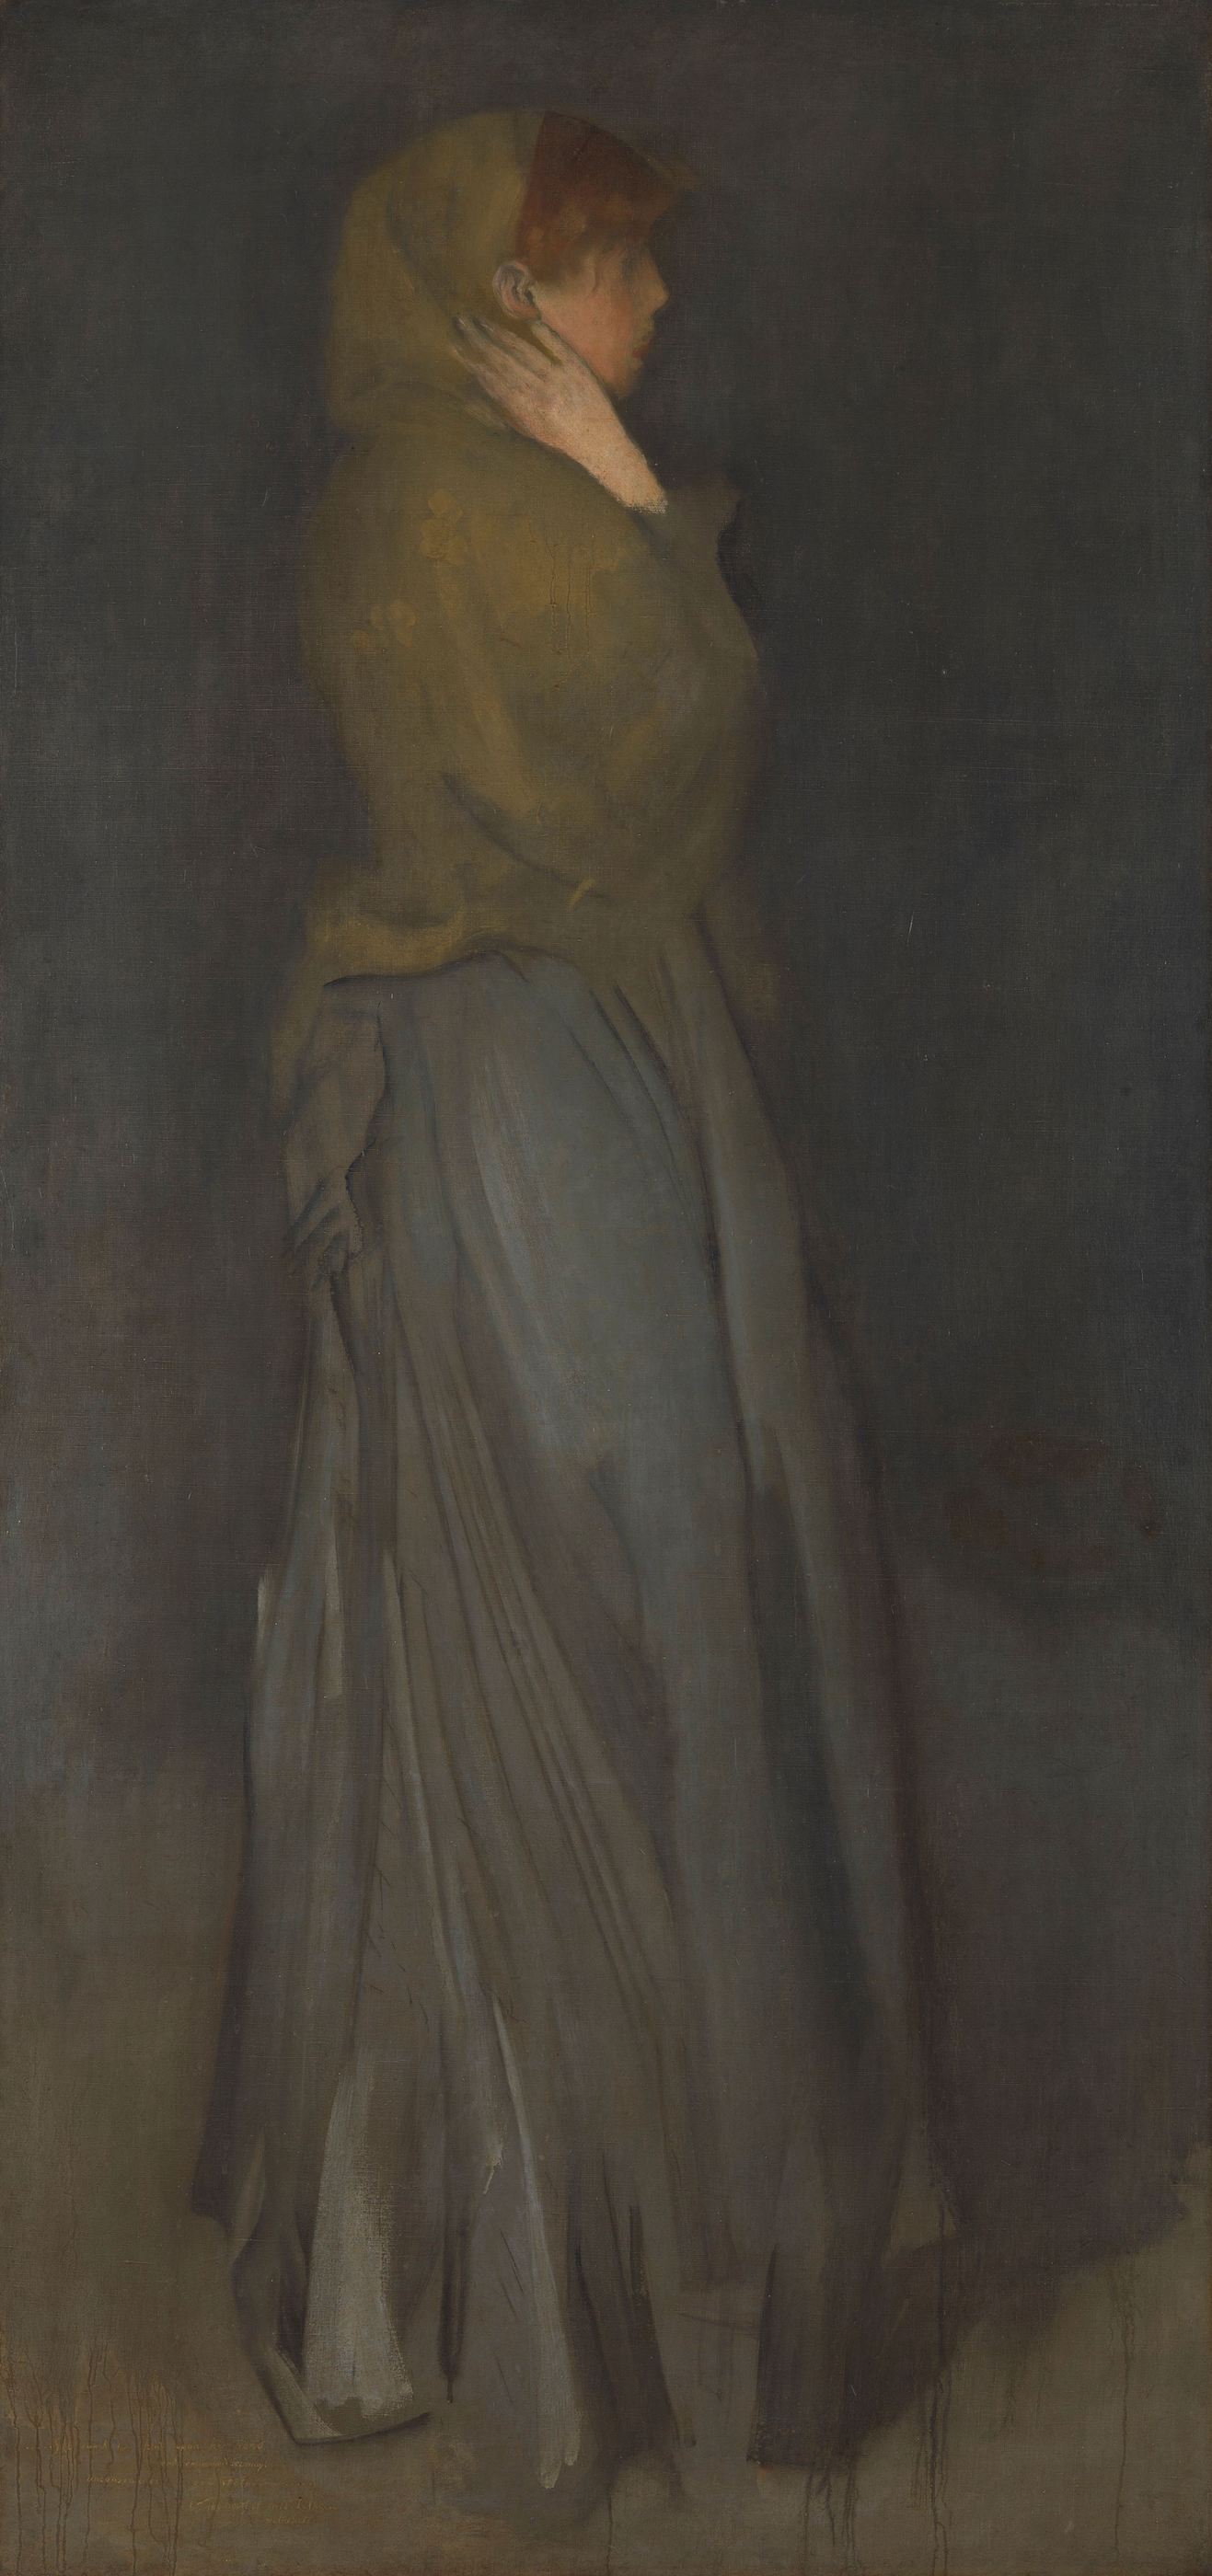 Σύνθεση σε κίτρινο και γκρι: Έφι Ντινς by Τζέιμς Άμποτ Μακνίλ Γουίστλερ - περ. 1878 - 194 εκ. × 93 εκ. 